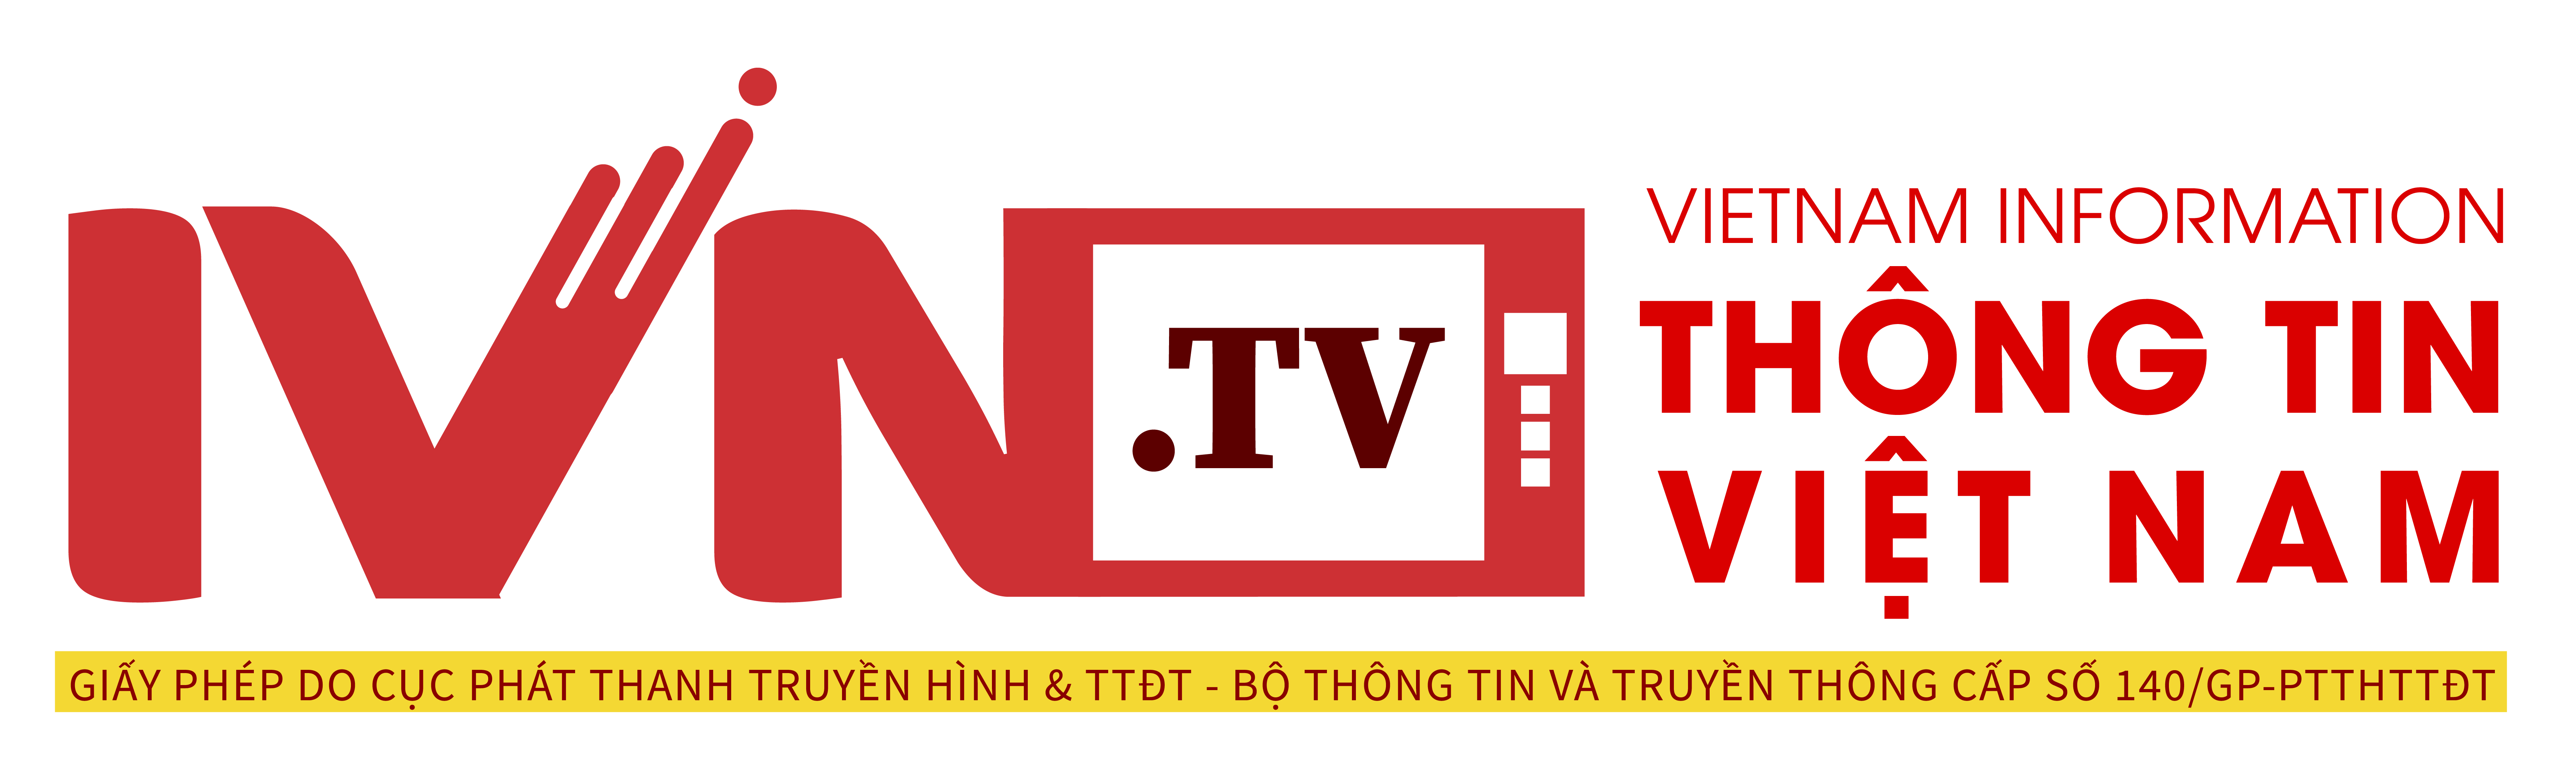 IVN - Vietnam Information - Thông tin Việt Nam - ivn.net.vn - IVNTV